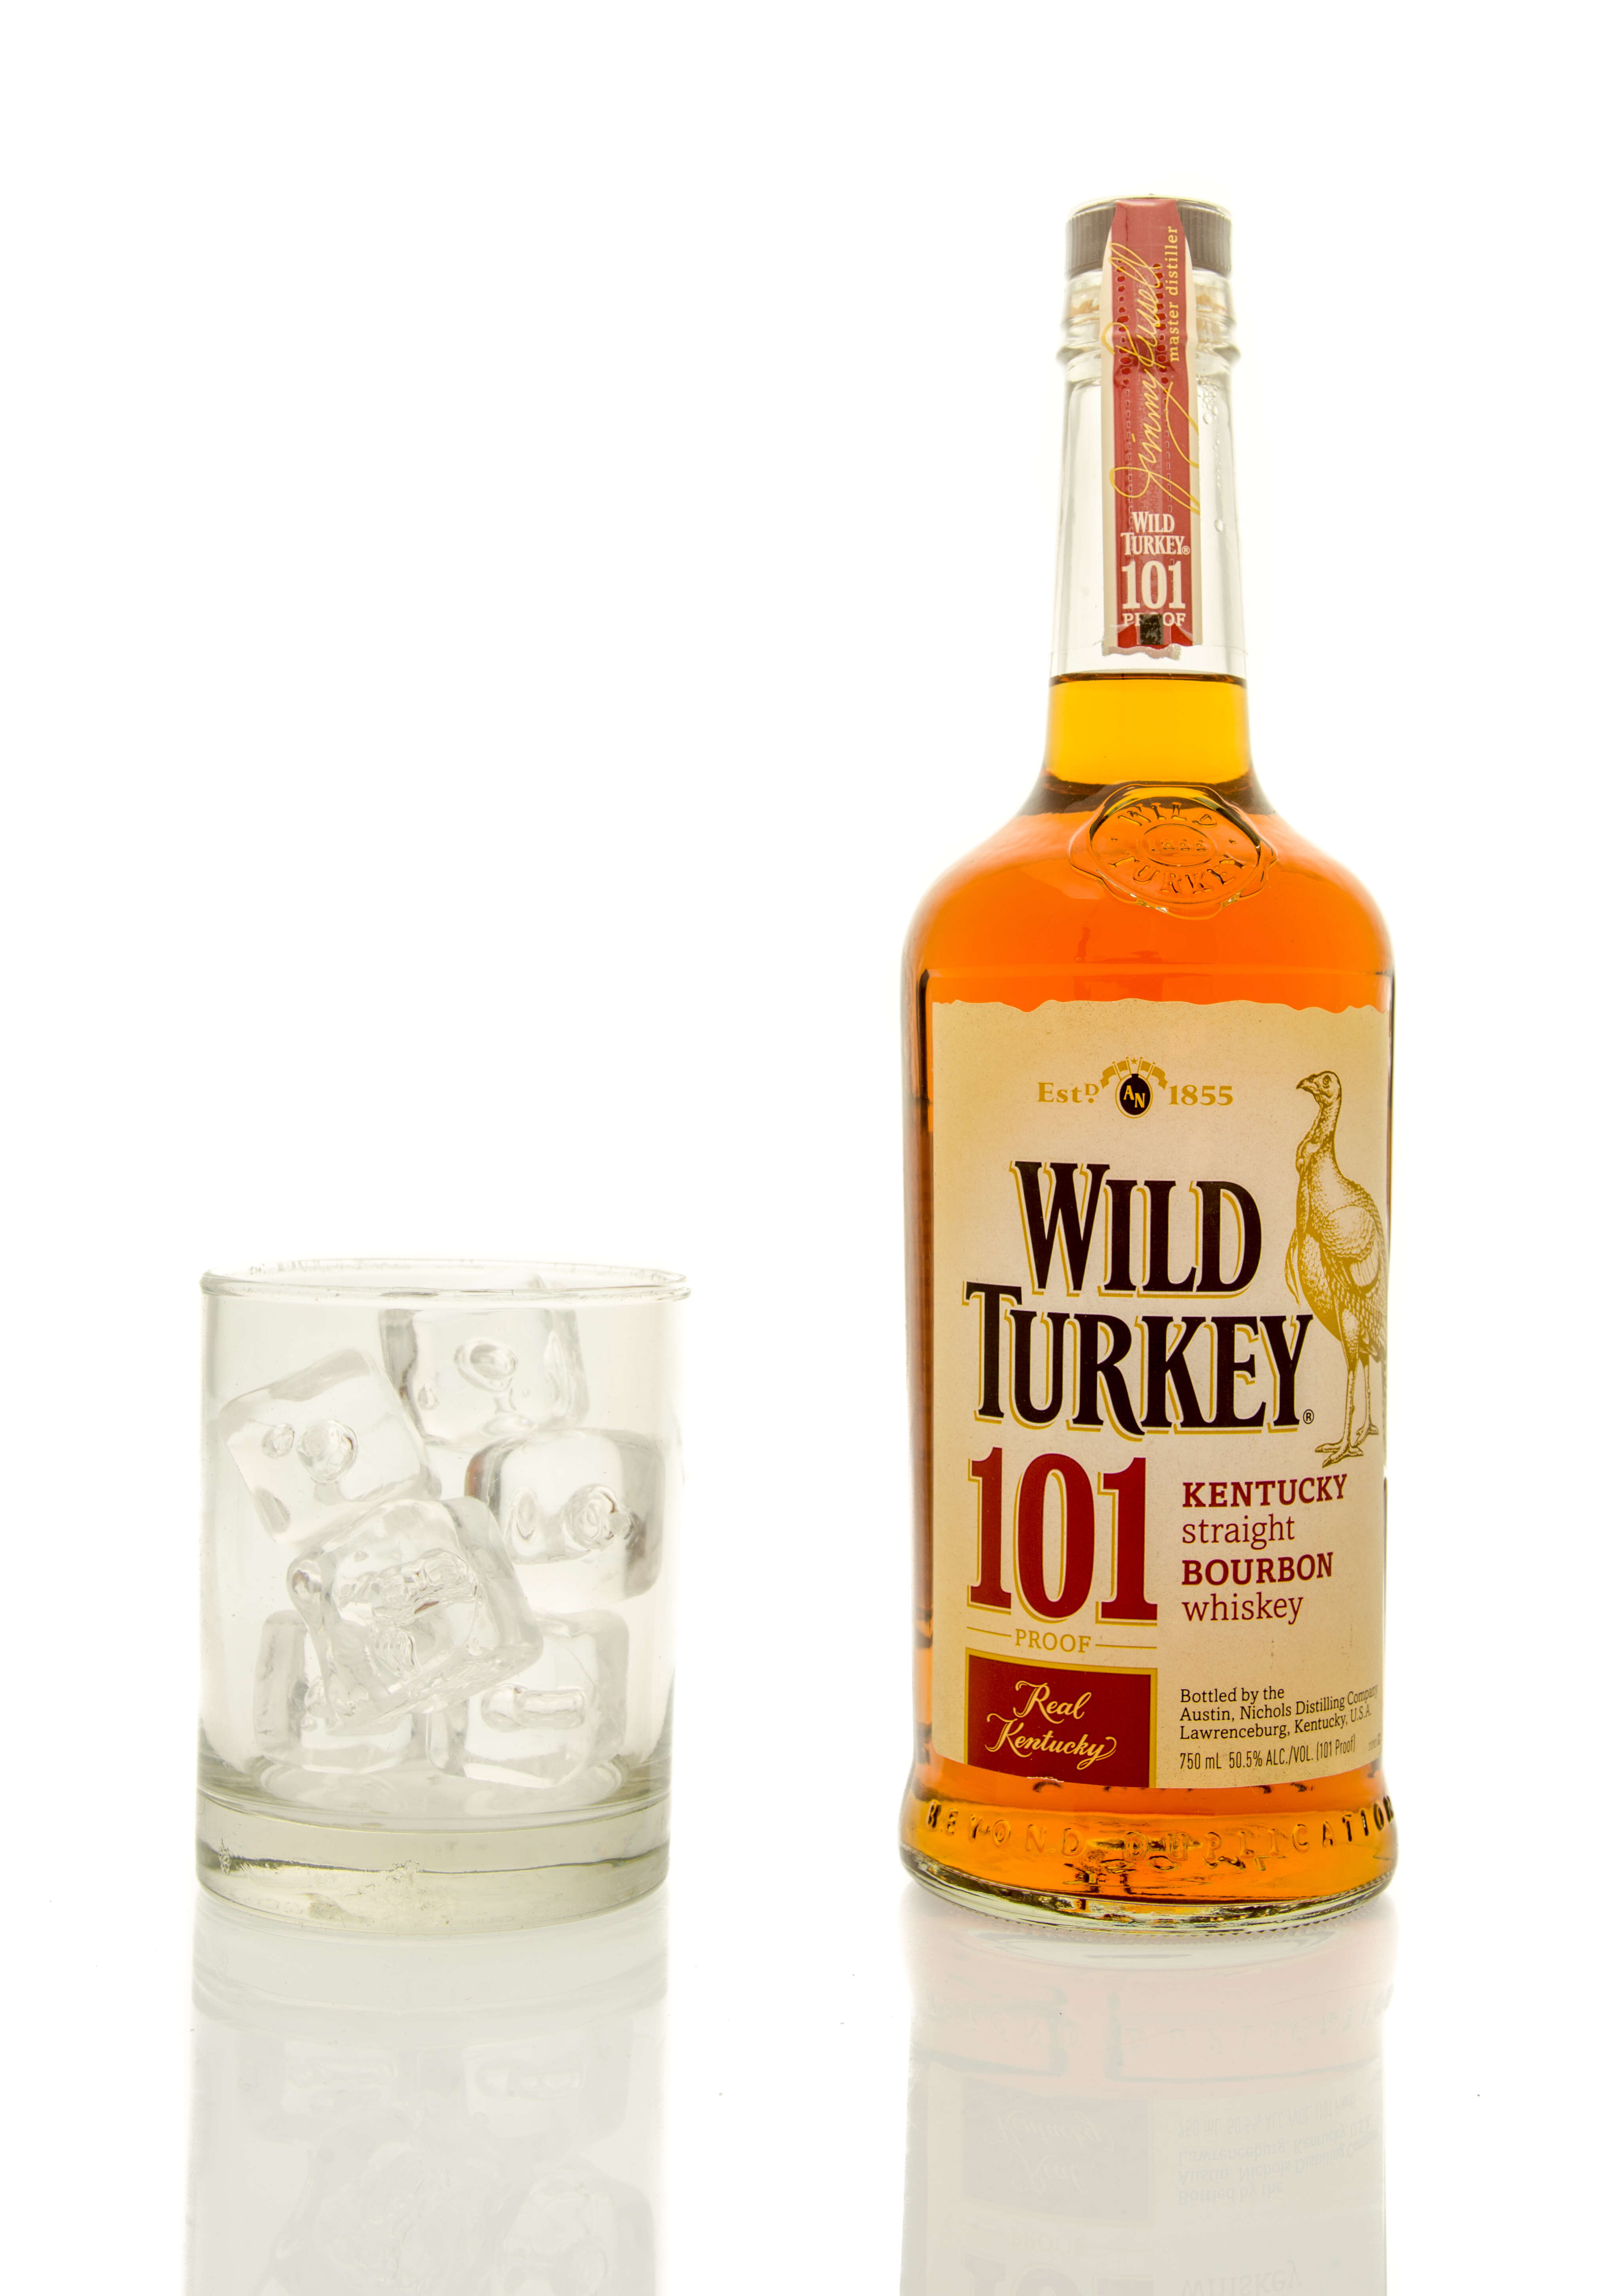 Wild turkey